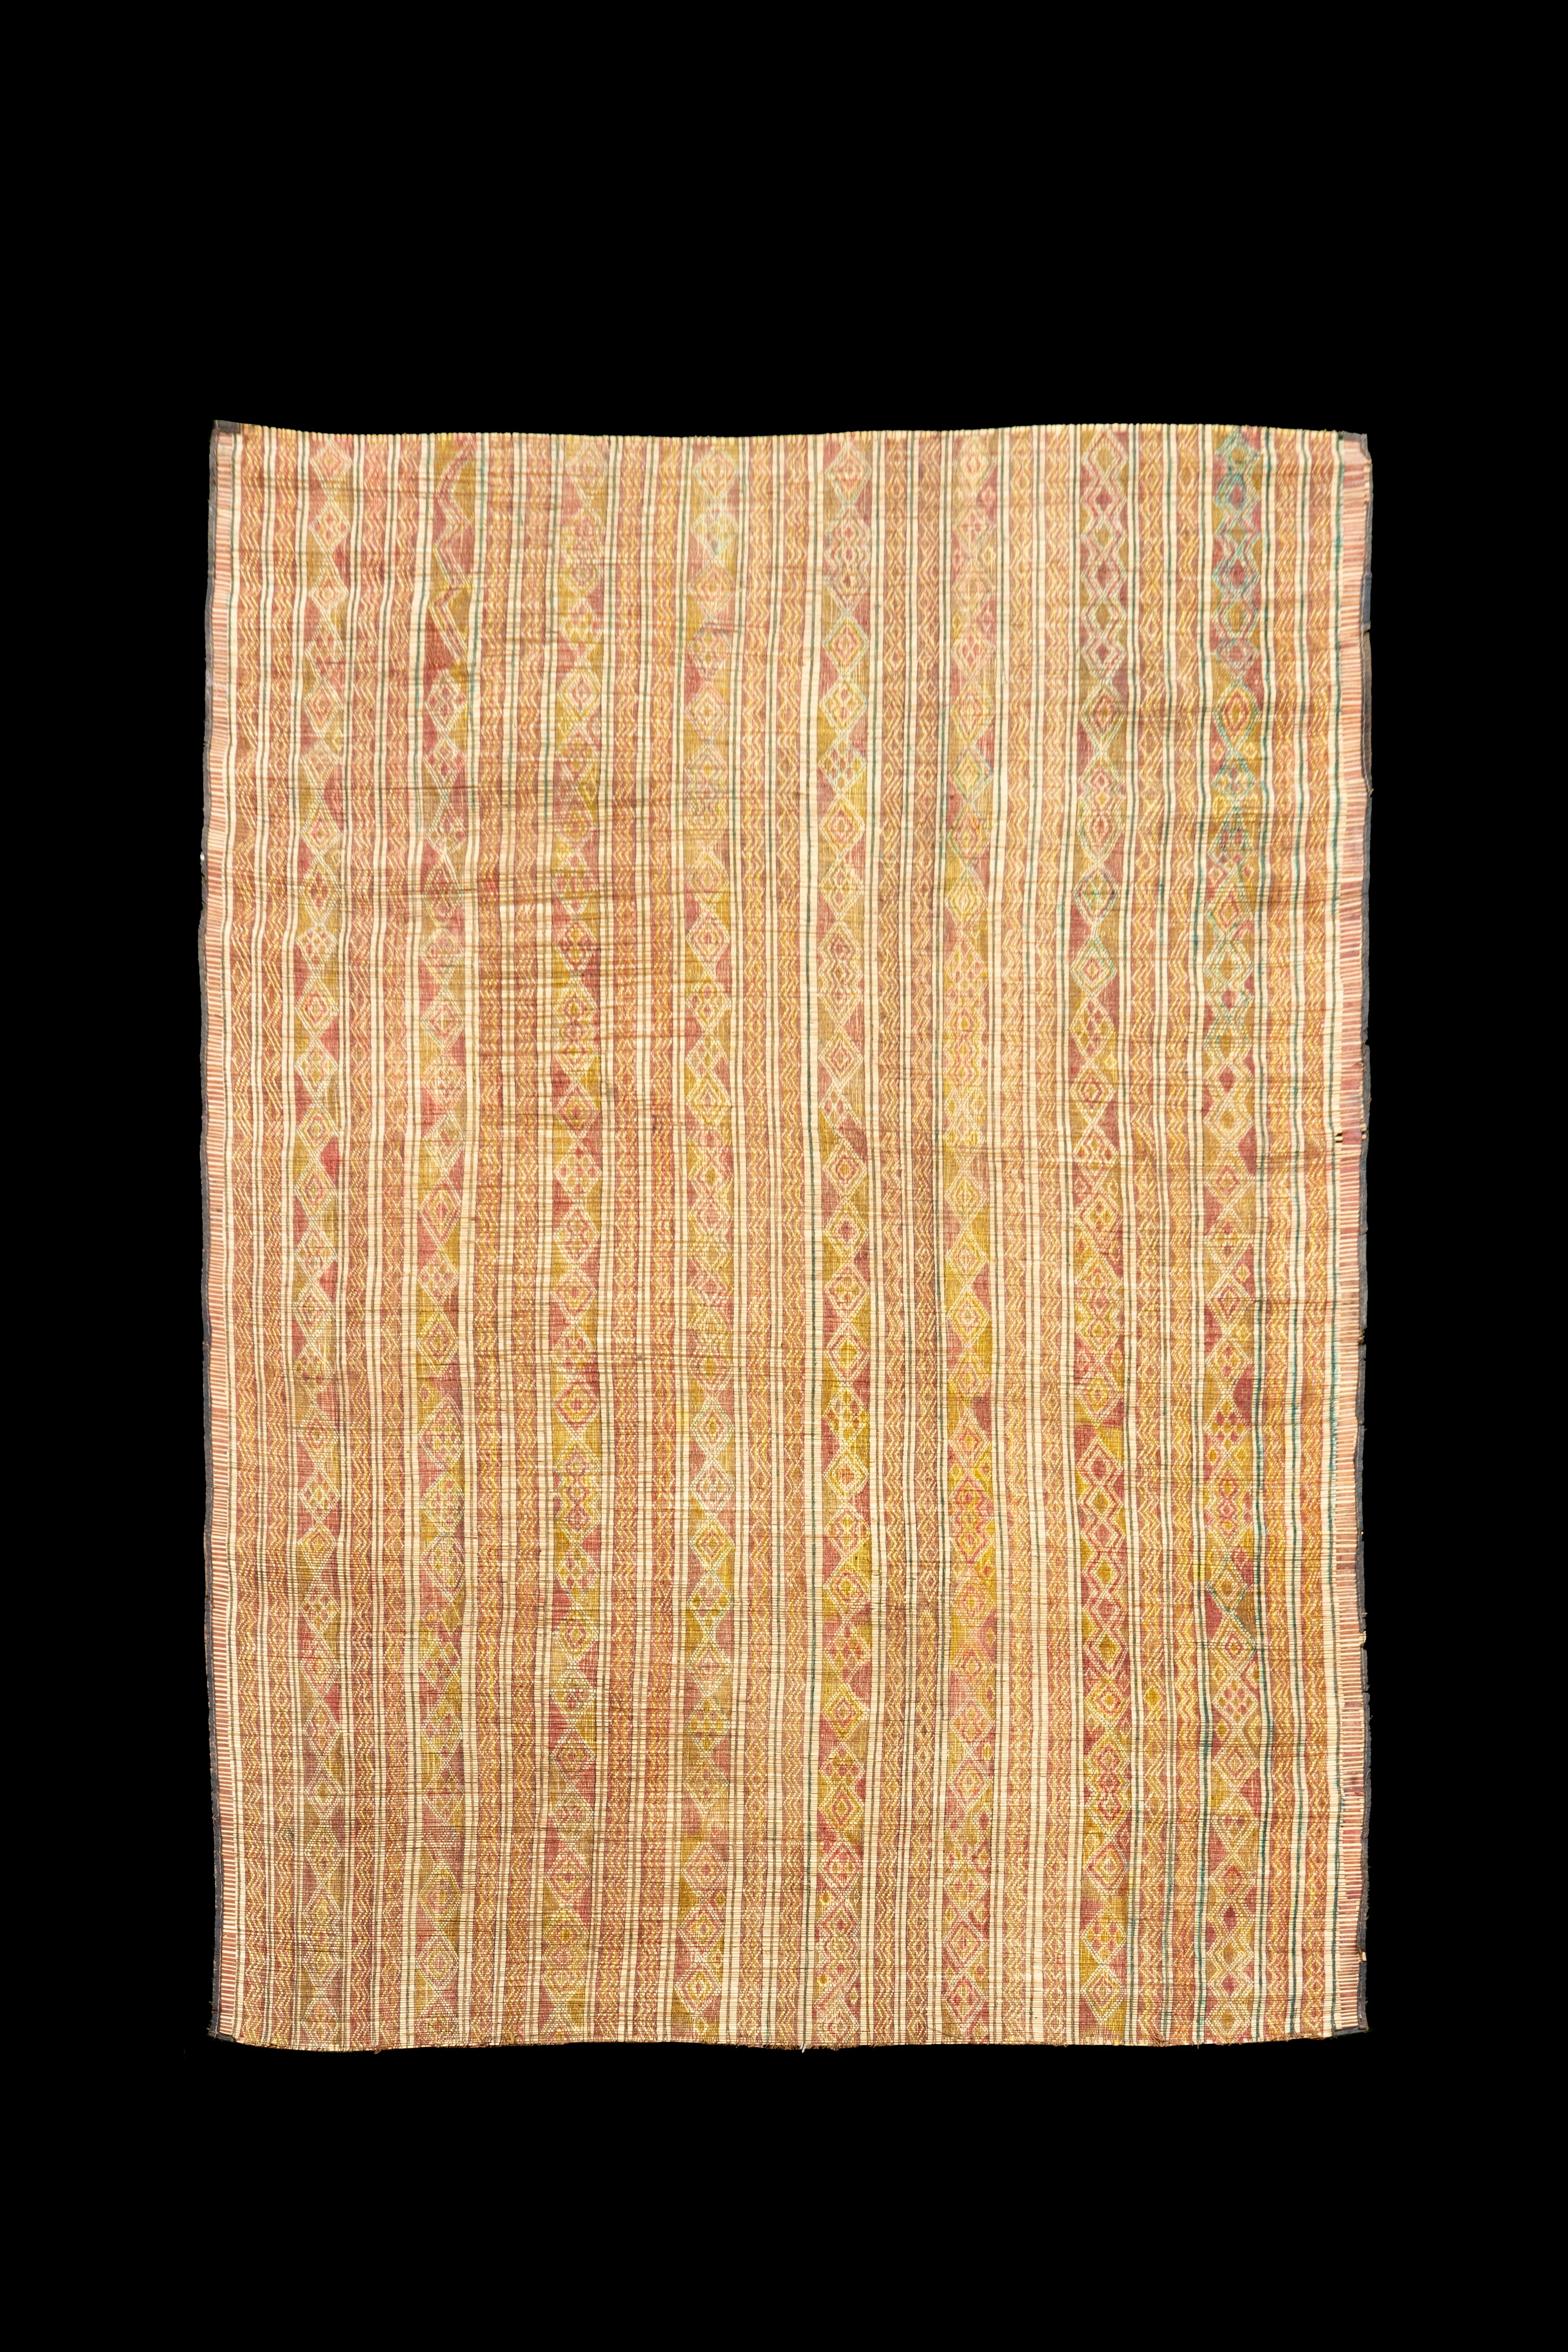 Mauretanischer Teppich.  Diese marokkanische, mauretanische (Tuareg) Ledermatte ist aus Zwergpalmenfasern gefertigt und mit Lederstreifen handgewebt. Das schöne Design ist typisch für die nordafrikanische Kultur, die es geschaffen hat, nämlich die